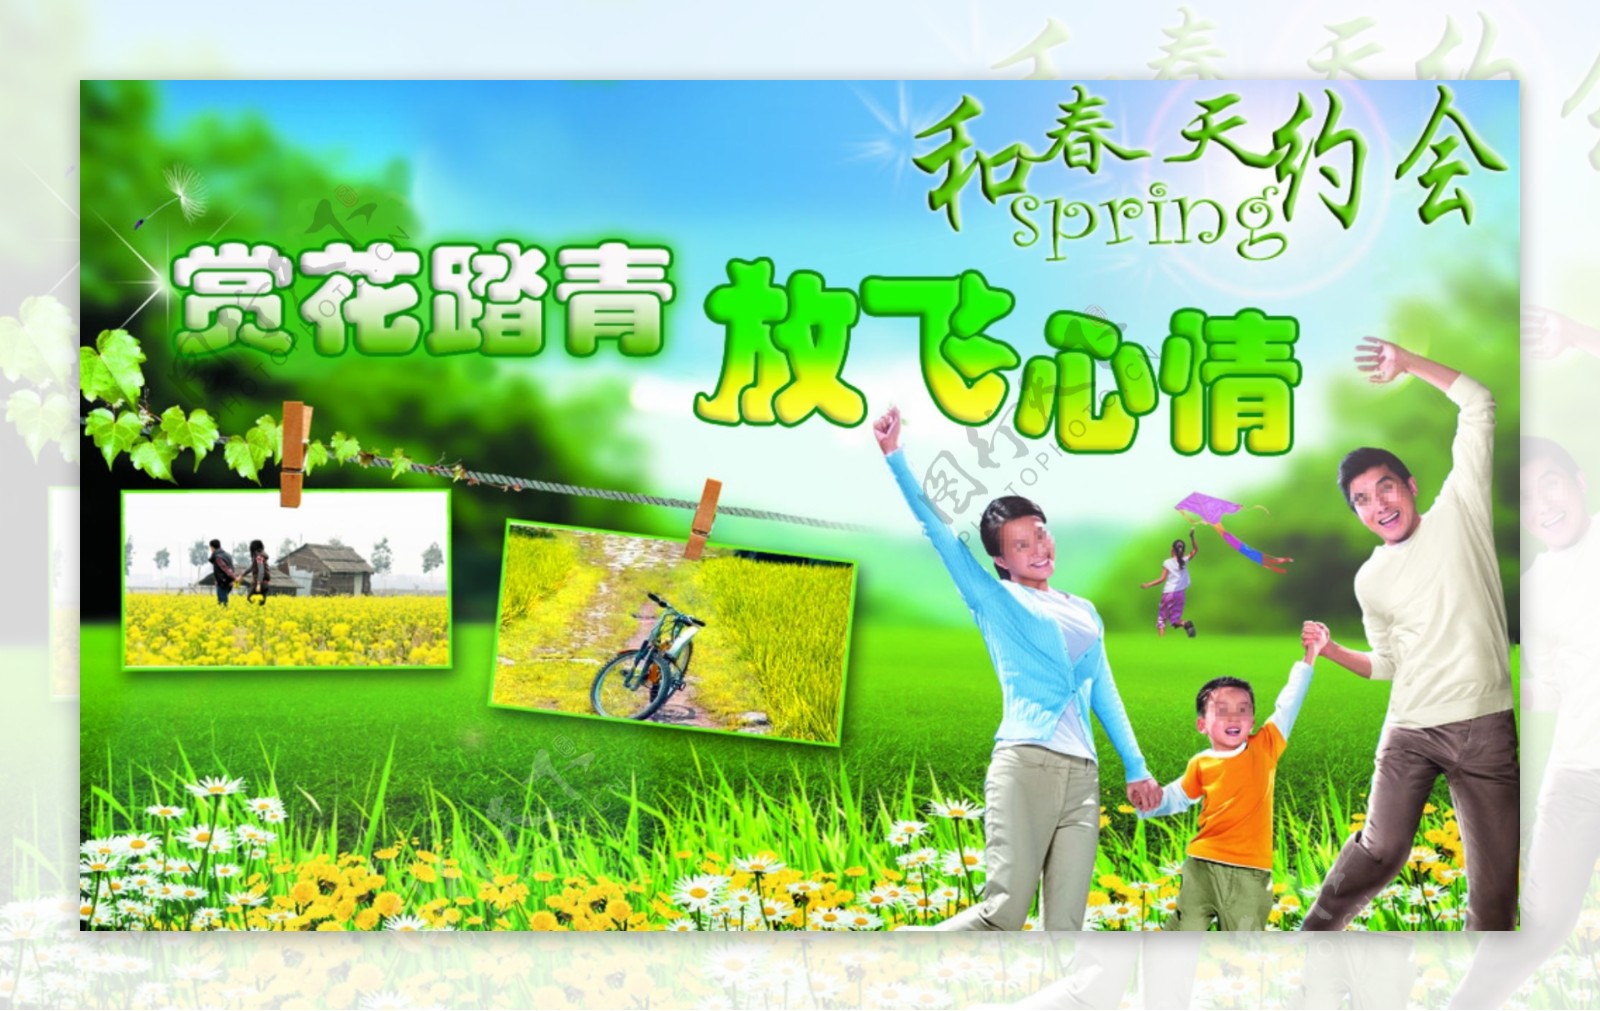 春季踏青赏花广告图片